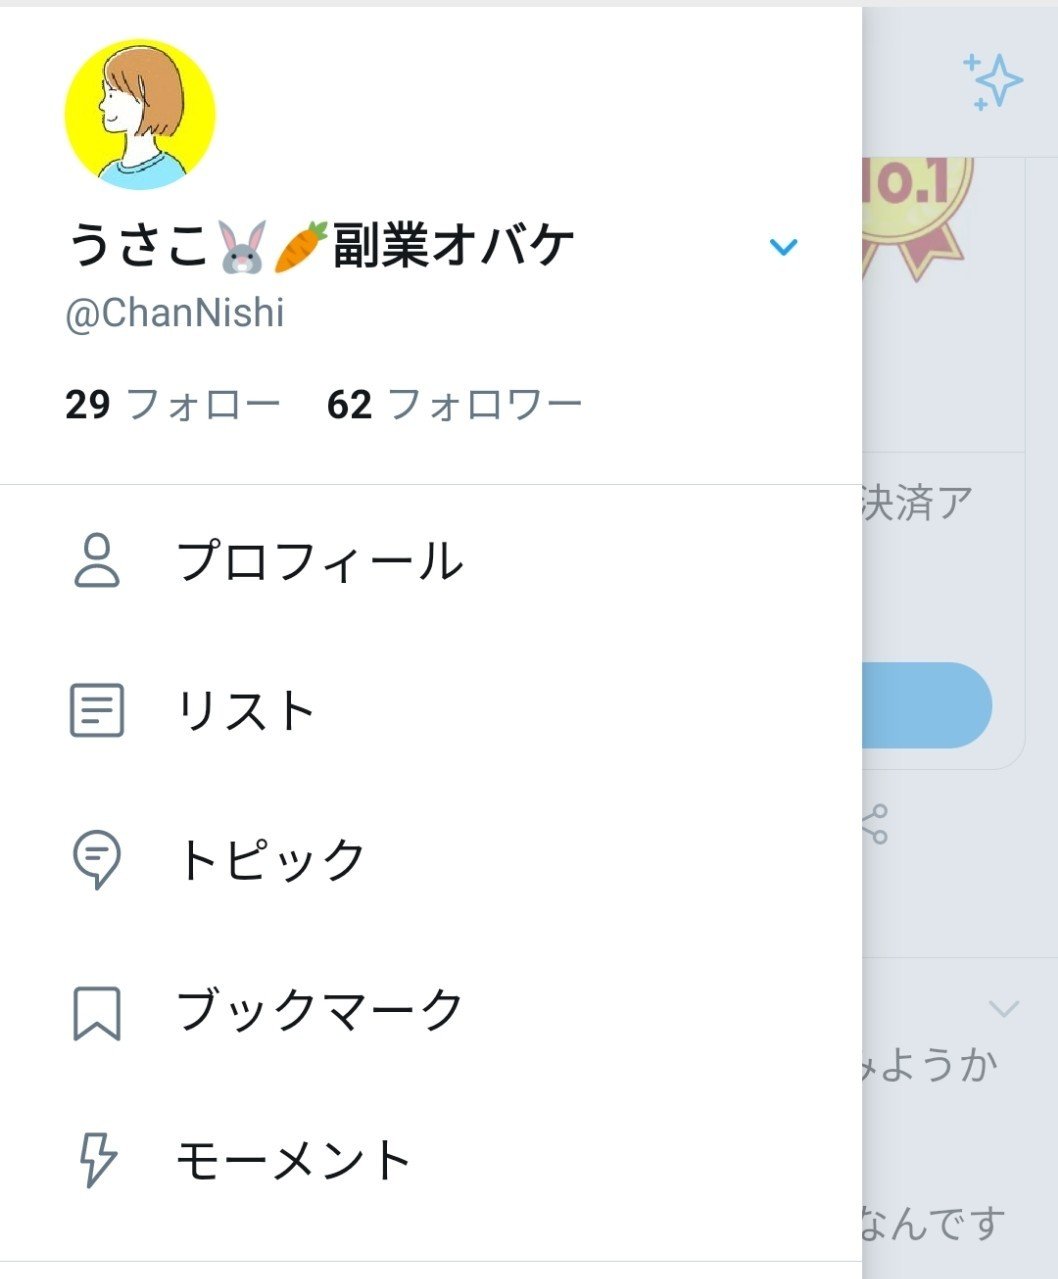 Twitterおすすめオーダーアイコン ウサコ 毎日更新100日突破 Note